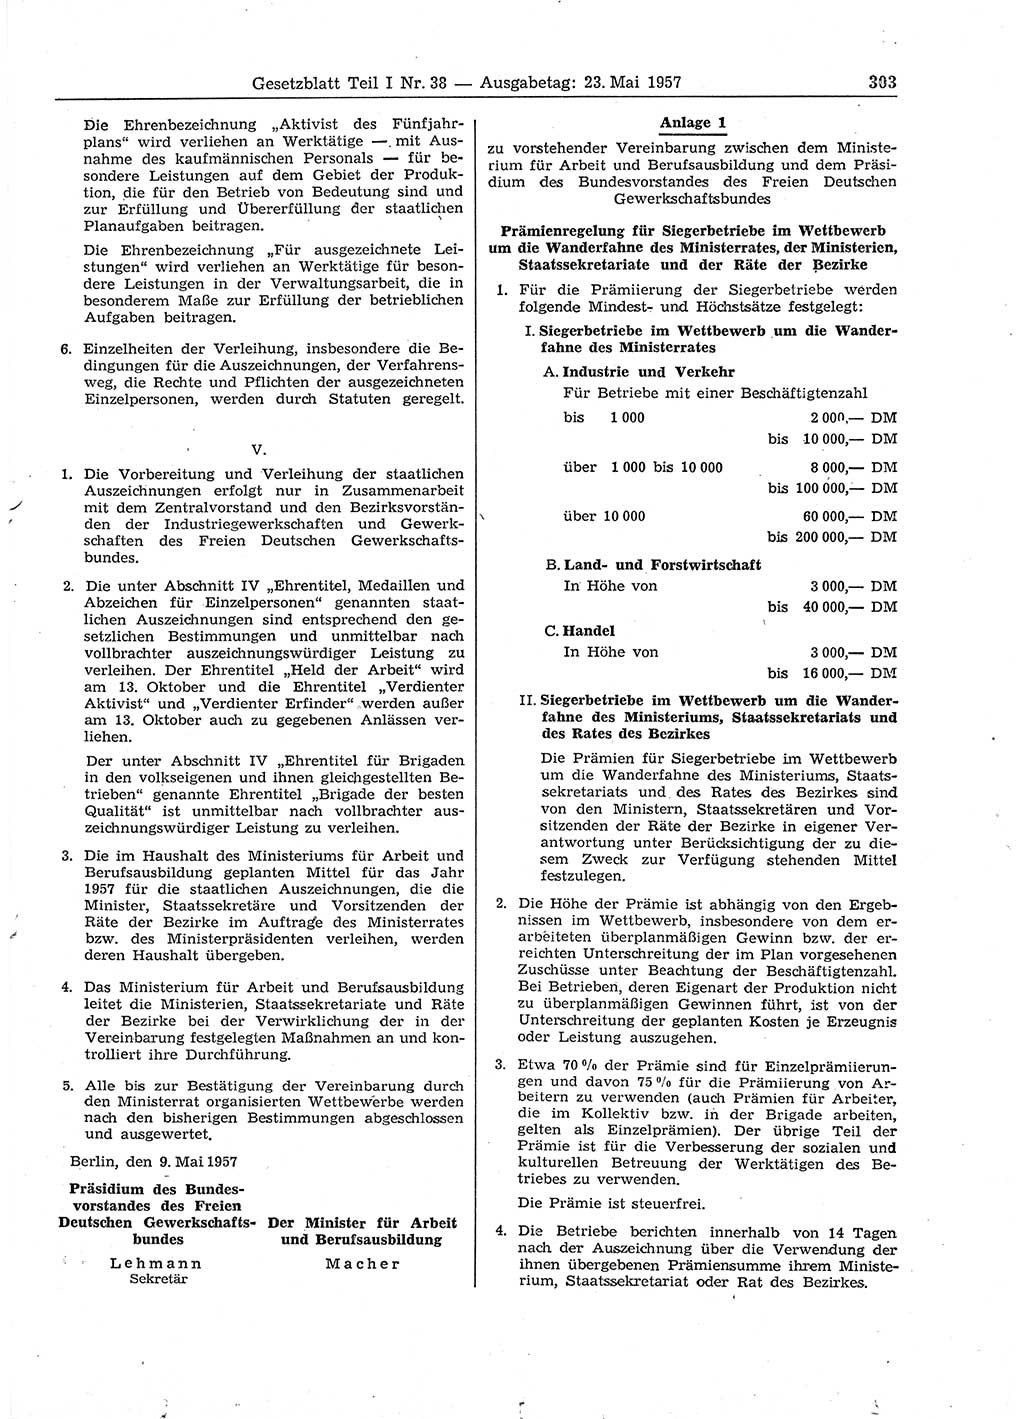 Gesetzblatt (GBl.) der Deutschen Demokratischen Republik (DDR) Teil Ⅰ 1957, Seite 303 (GBl. DDR Ⅰ 1957, S. 303)